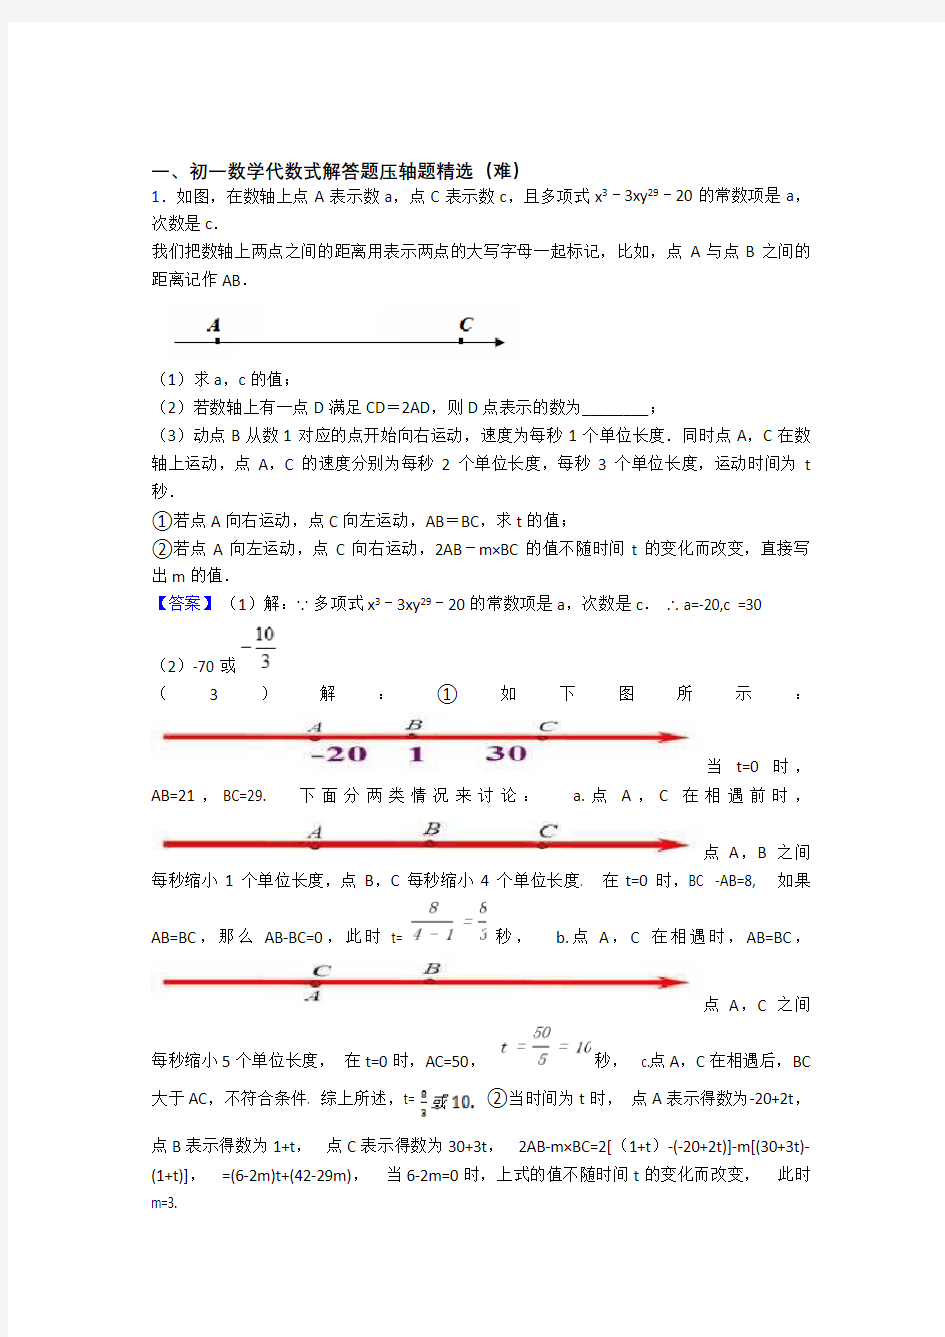 上海复旦初级中学数学代数式专题练习(解析版)